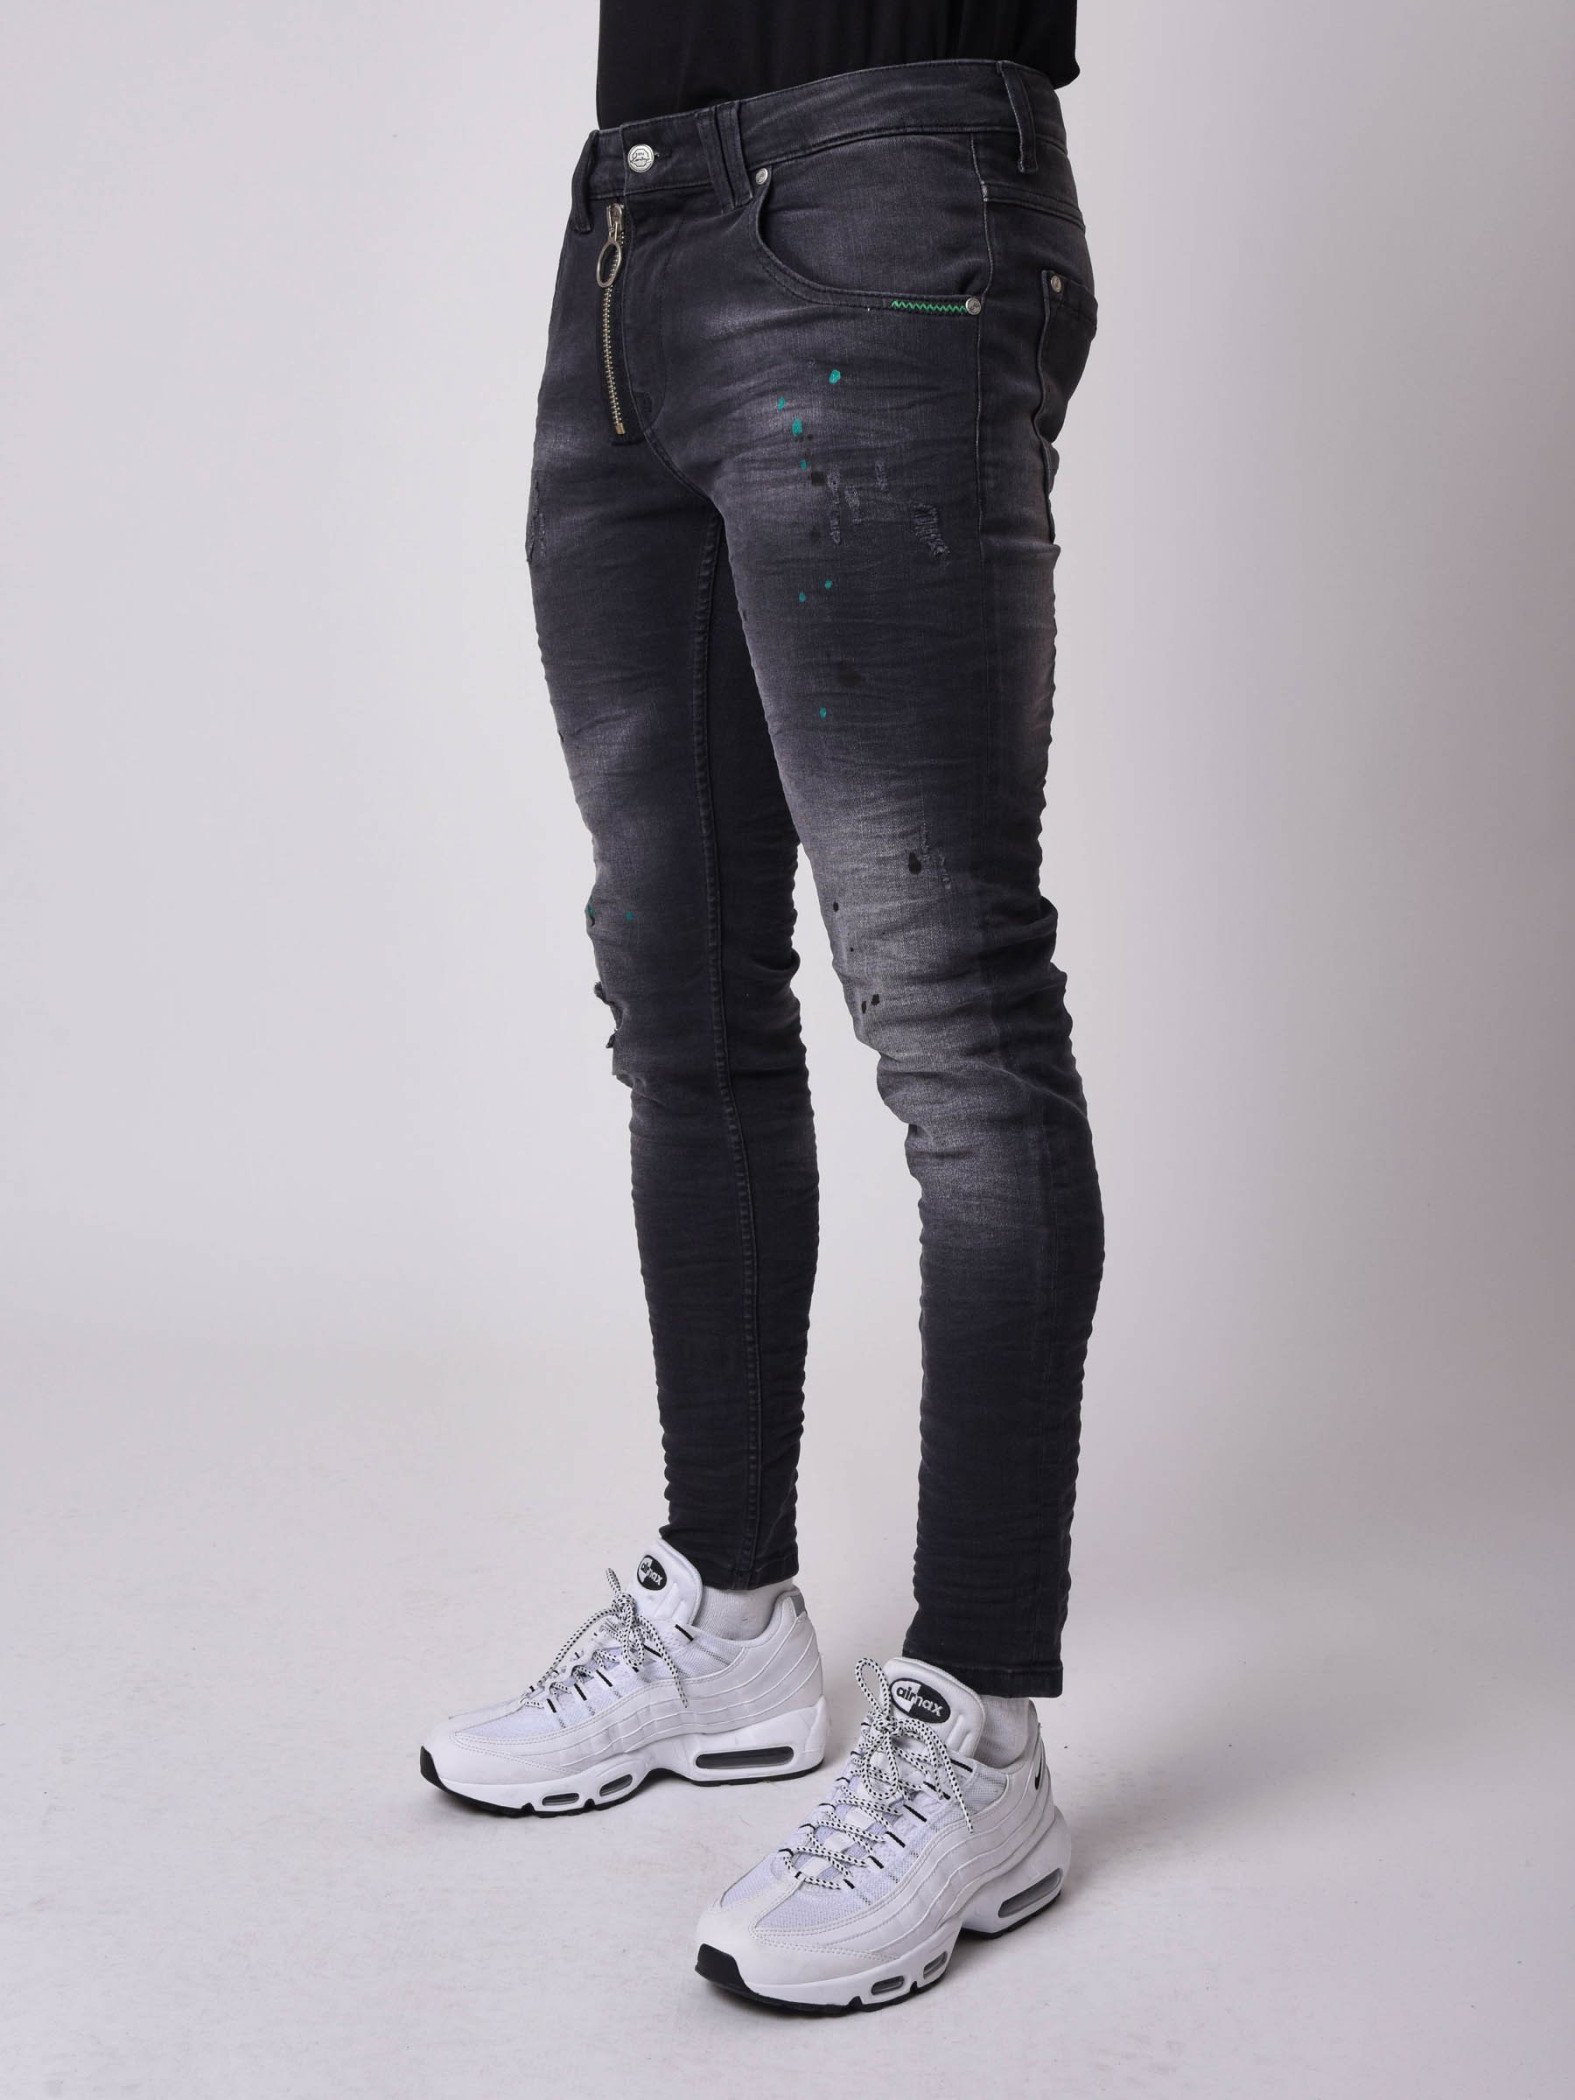 washed black skinny jeans mens